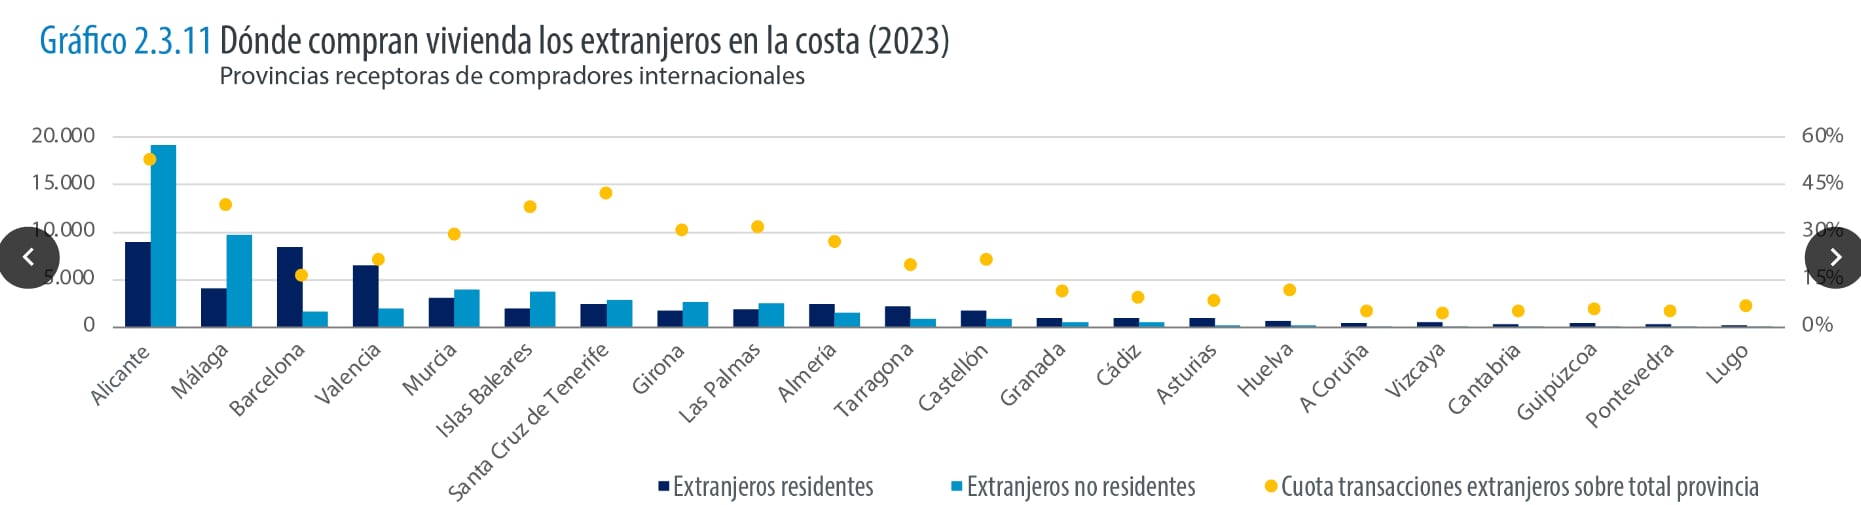 Dónde compran vivienda los extranjeros en la costa española